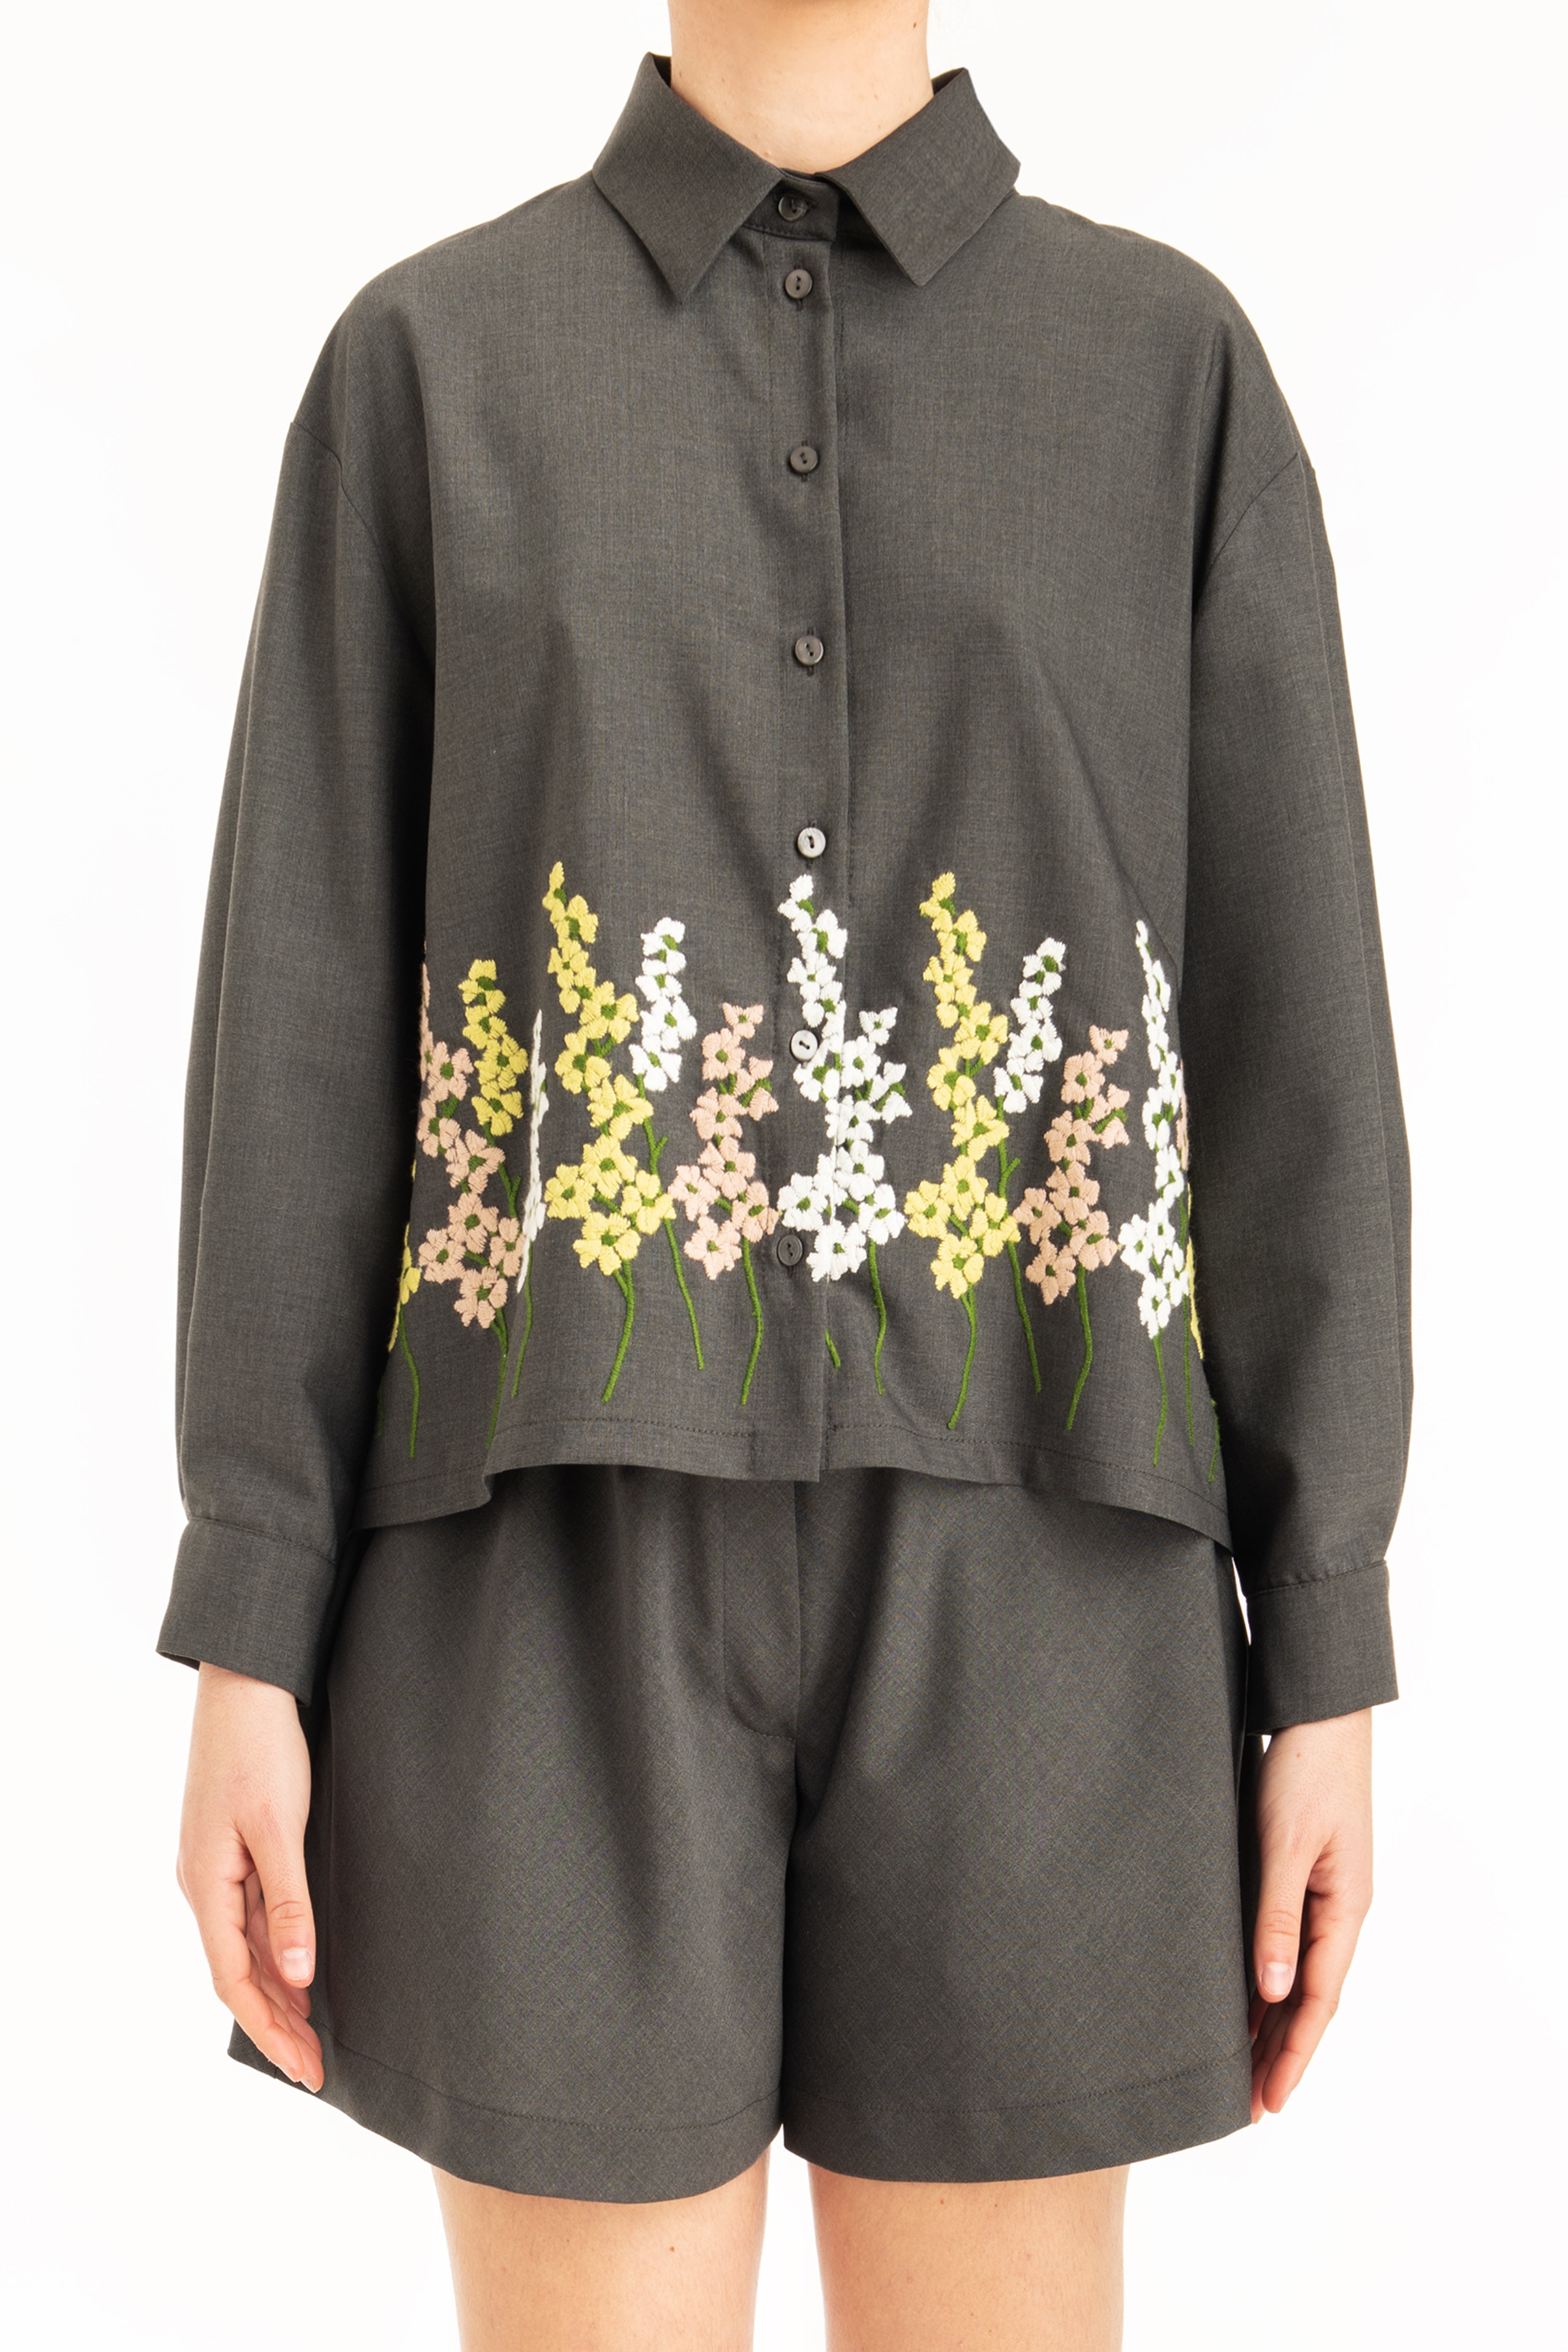 Camicia donna misto lana con ricami floreali